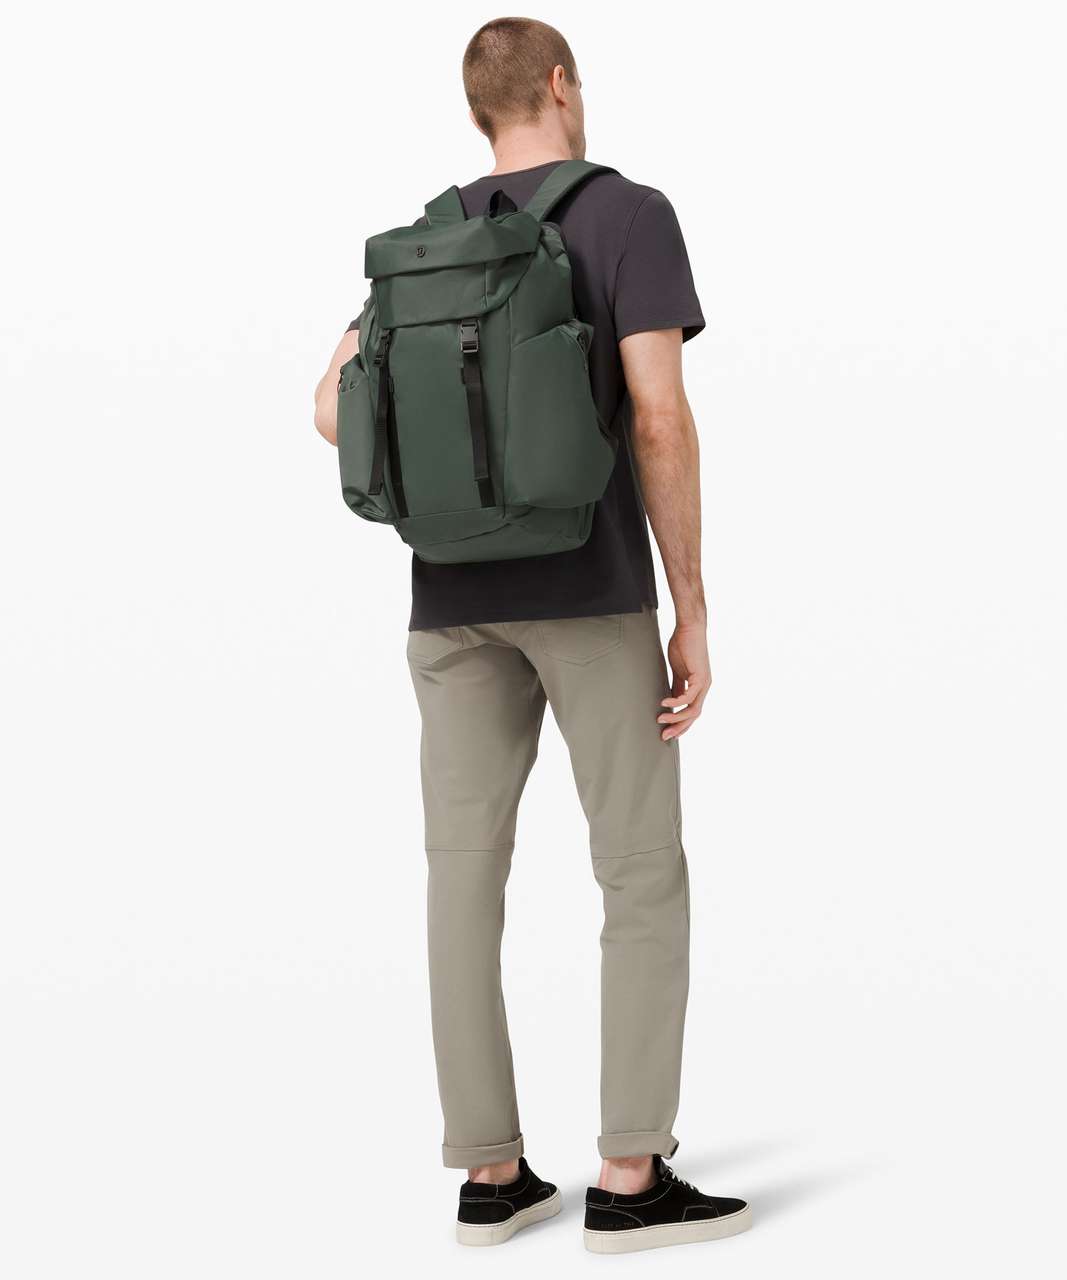 Lululemon Urban Nomad Large Backpack 35L - Smoked Spruce / Black